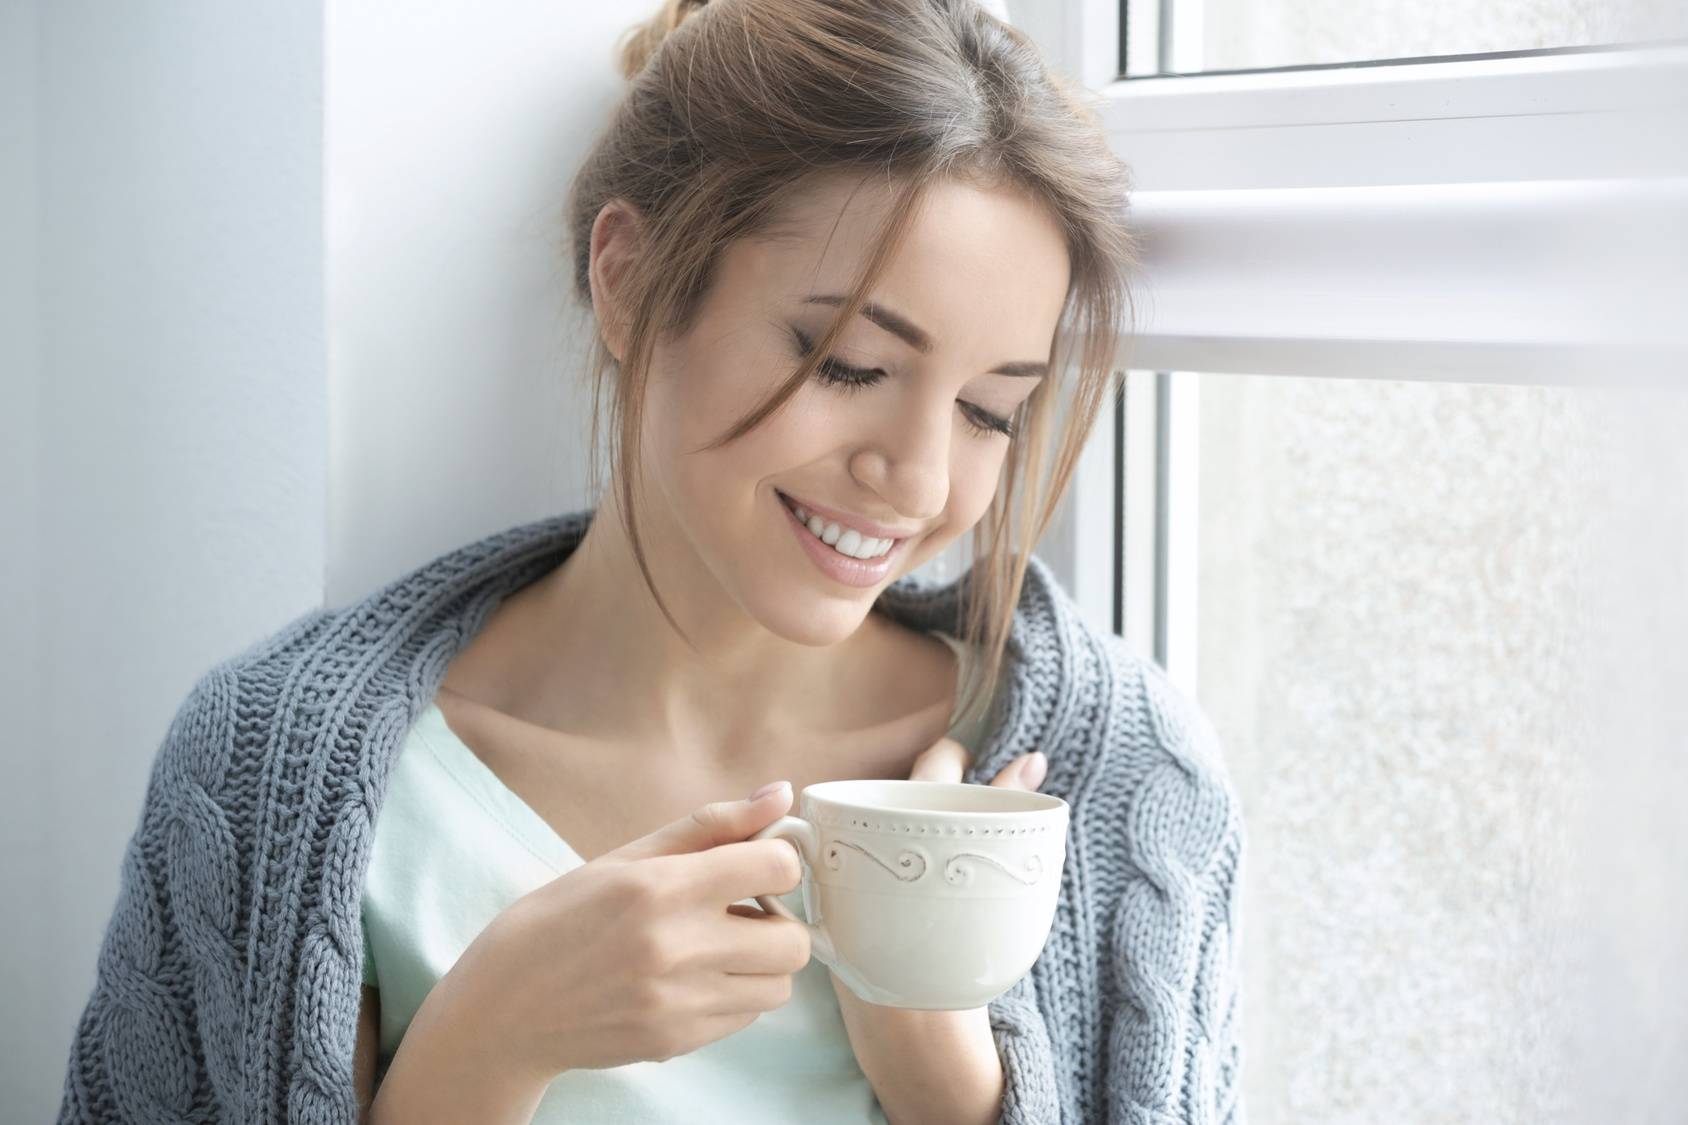 Phytolacca decandra - lek homeopatyczny na ból gardła. Kobieta otulona swetrem siedzi na parapecie i pije herbatę z białej filiżanki.